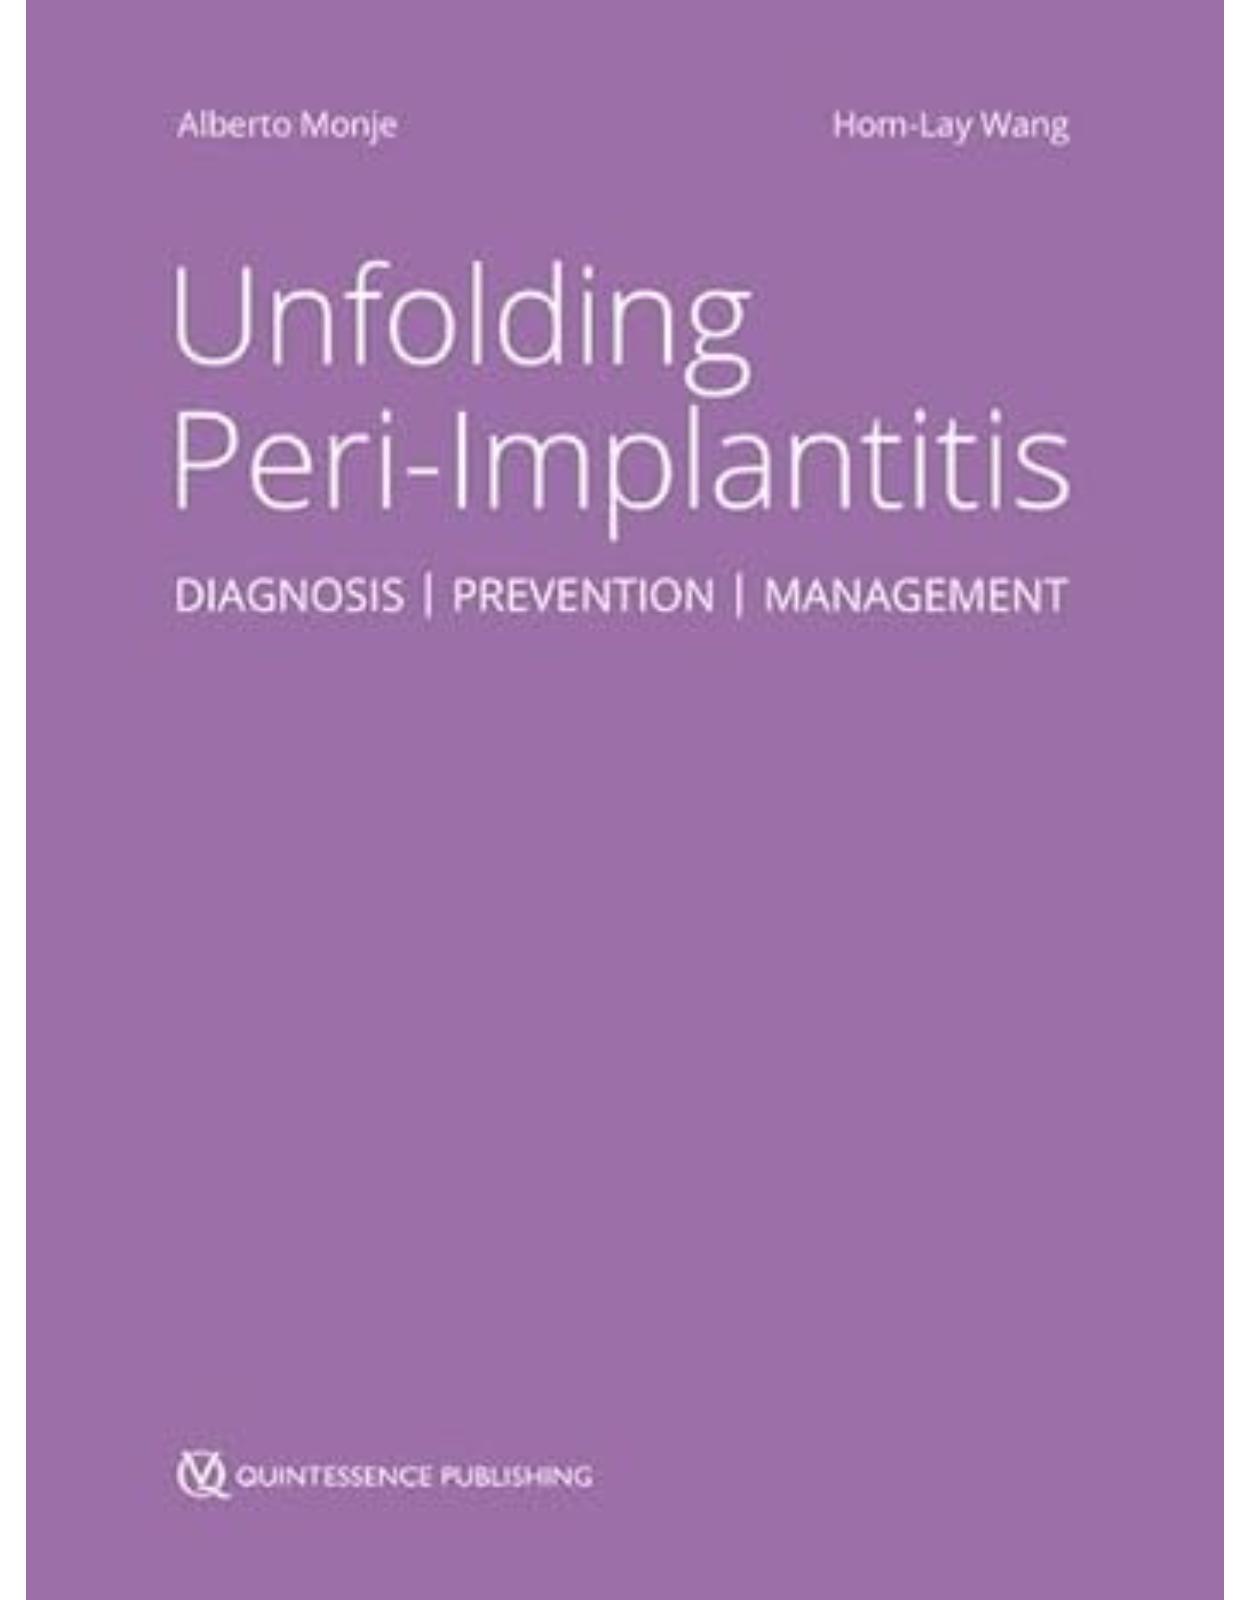 Unfolding Peri-Implantitis. Diagnosis, Prevention, Management